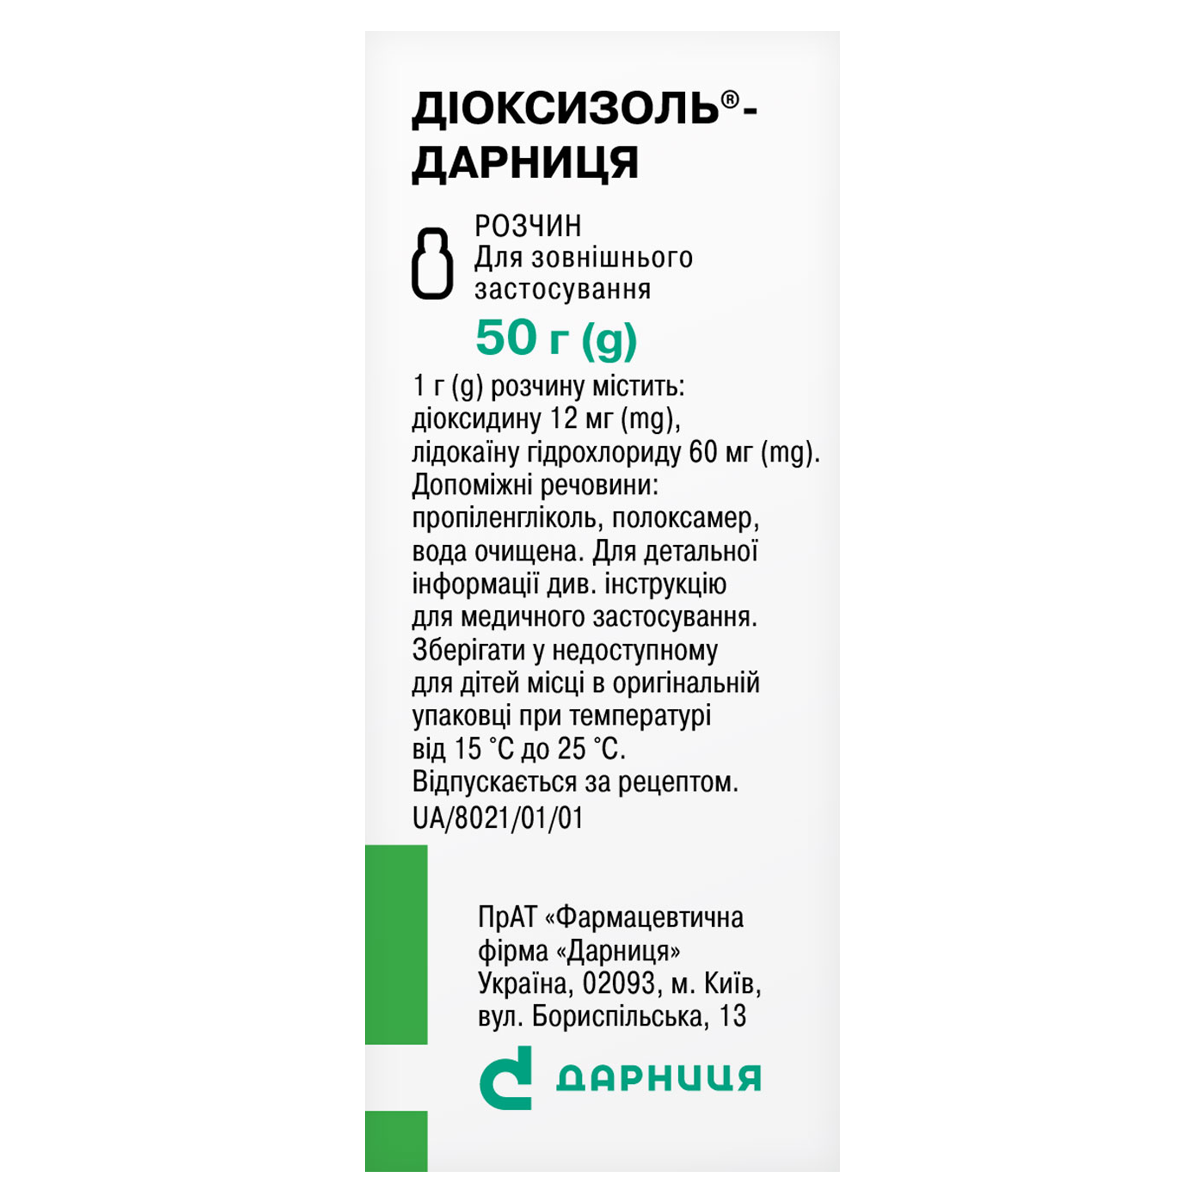 Dioxizol-Darnitsa «Darnytsia» pharmaceutical company